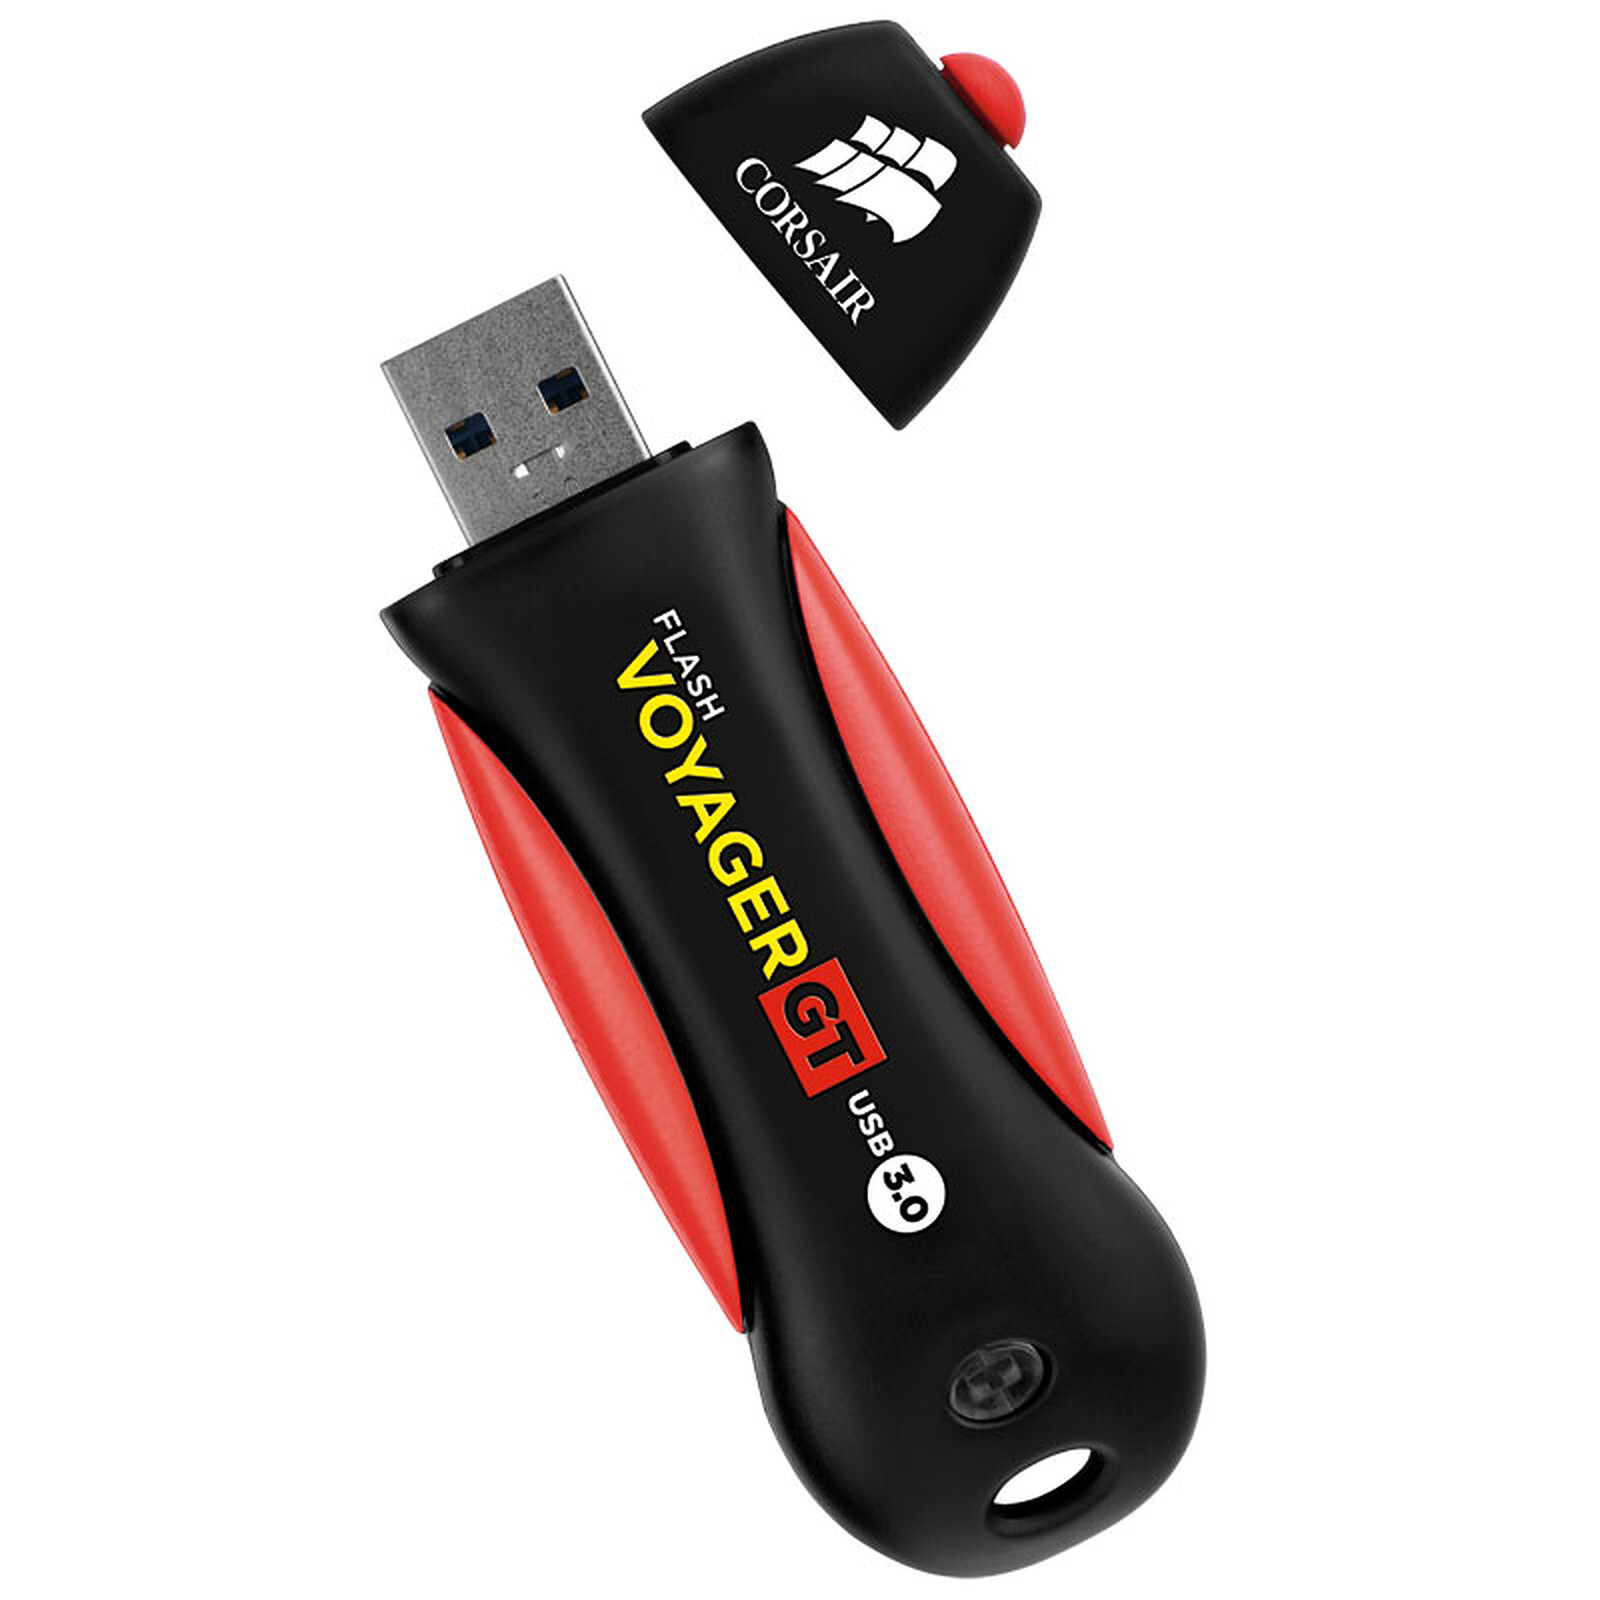 Soldes : clé USB Corsair GTR 64 Go à 70 euros - Les Numériques